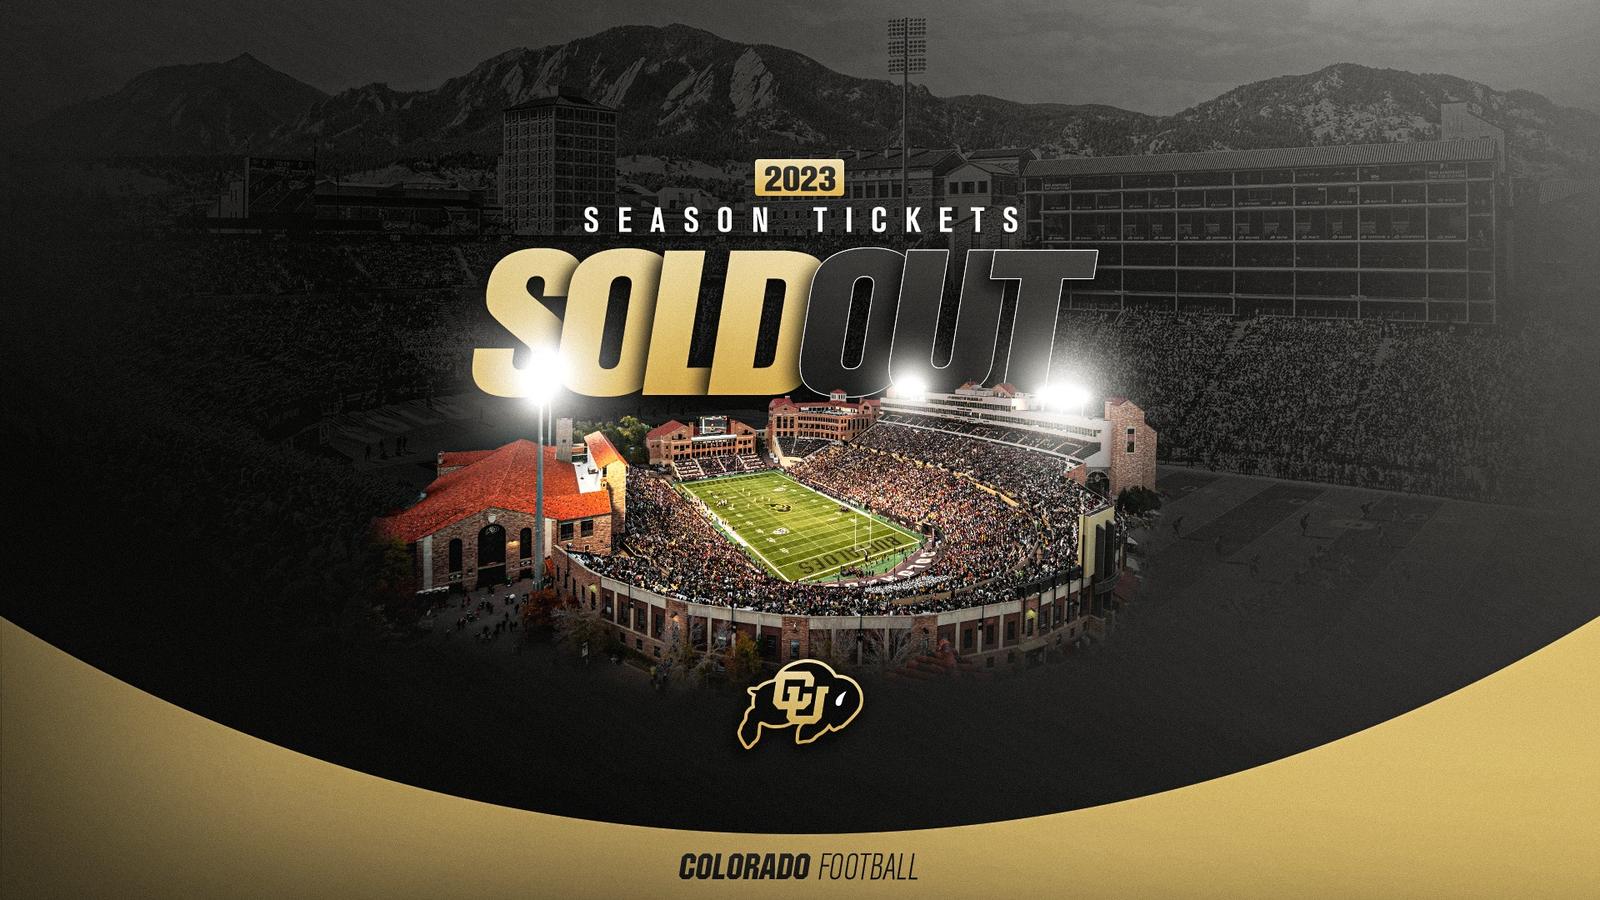 Colorado Football 2023 Season Tickets Sold Out - University of Colorado Athletics